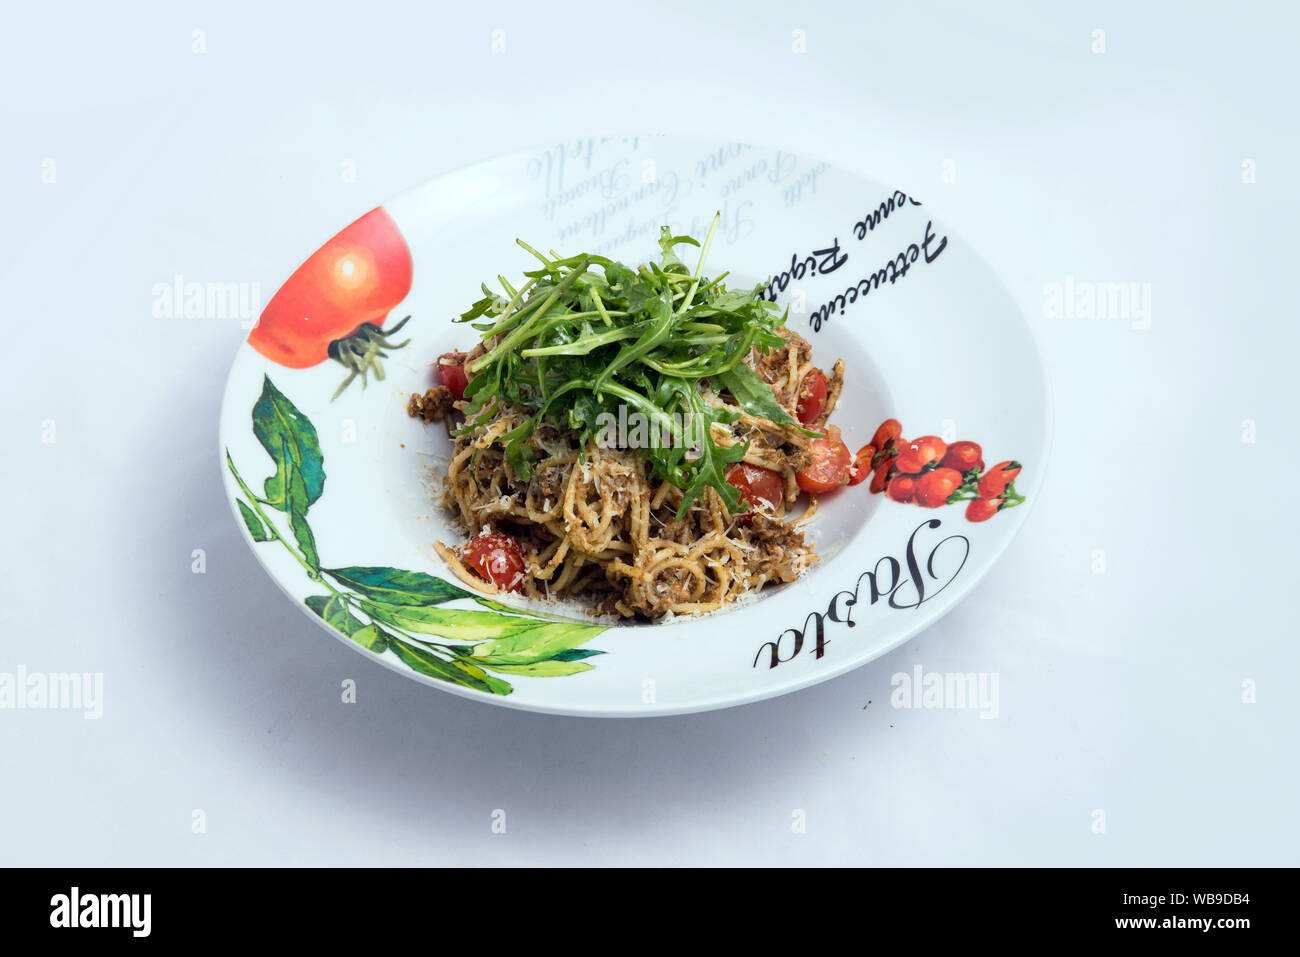 Einen niedrigen Kontrast hero Schuß eines Thunfisch Thunfisch pasta/Tapenade mit Oliven, Tomaten und Salat, auf einen minimalen weißen Hintergrund mit einem 60 Grad Winkel von zoome Stockfoto